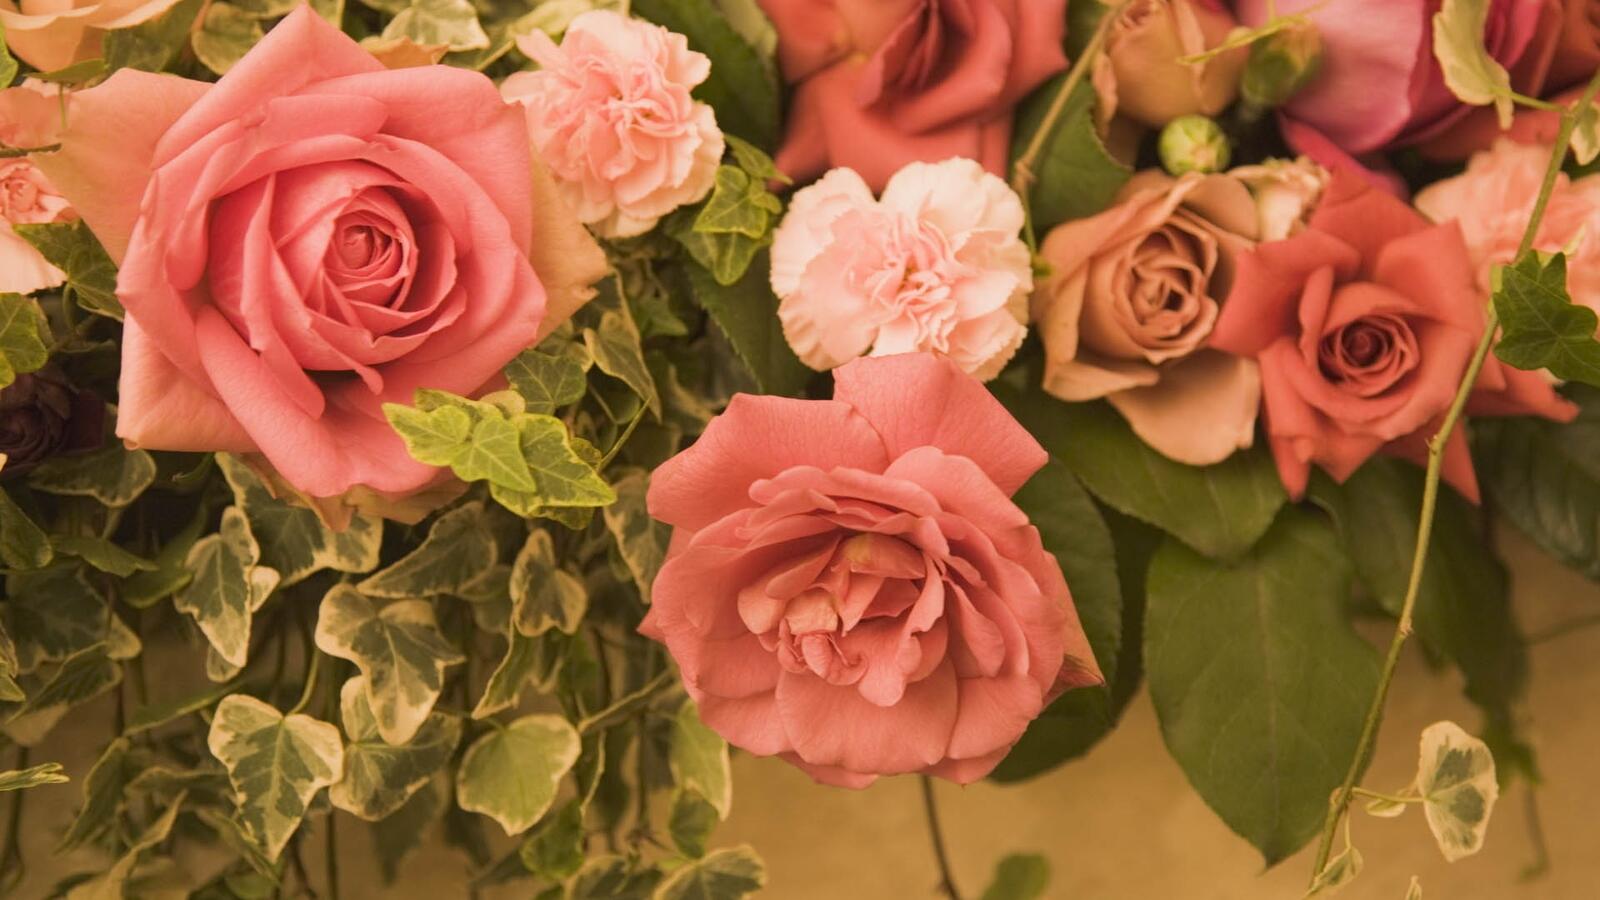 Бесплатное фото Куст на заборе с розовыми розами